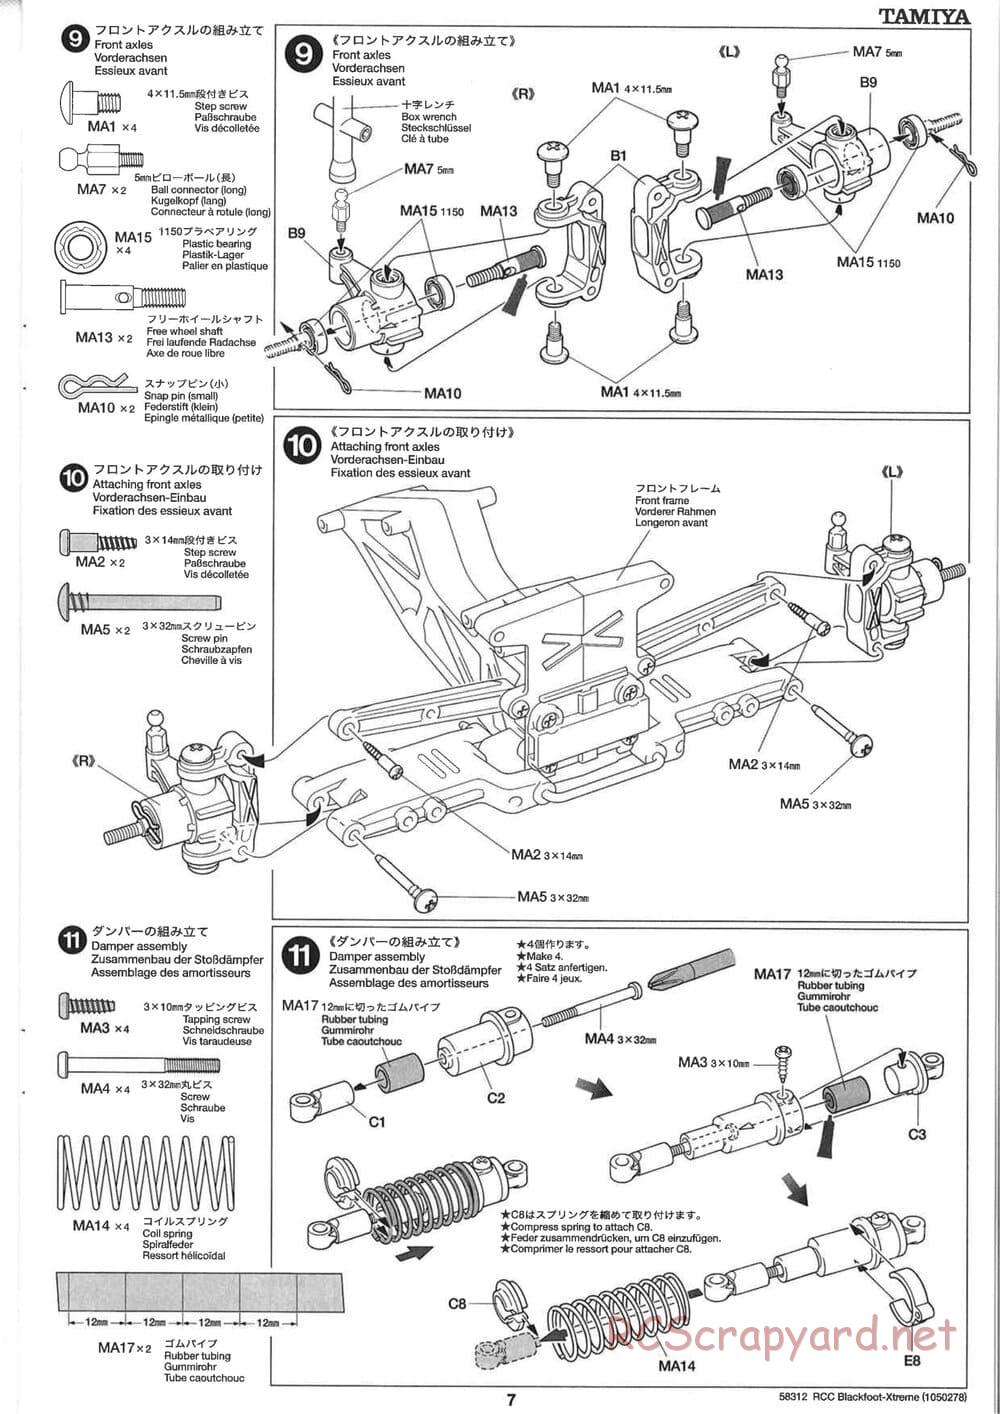 Tamiya - Blackfoot Xtreme - WT-01 Chassis - Manual - Page 7